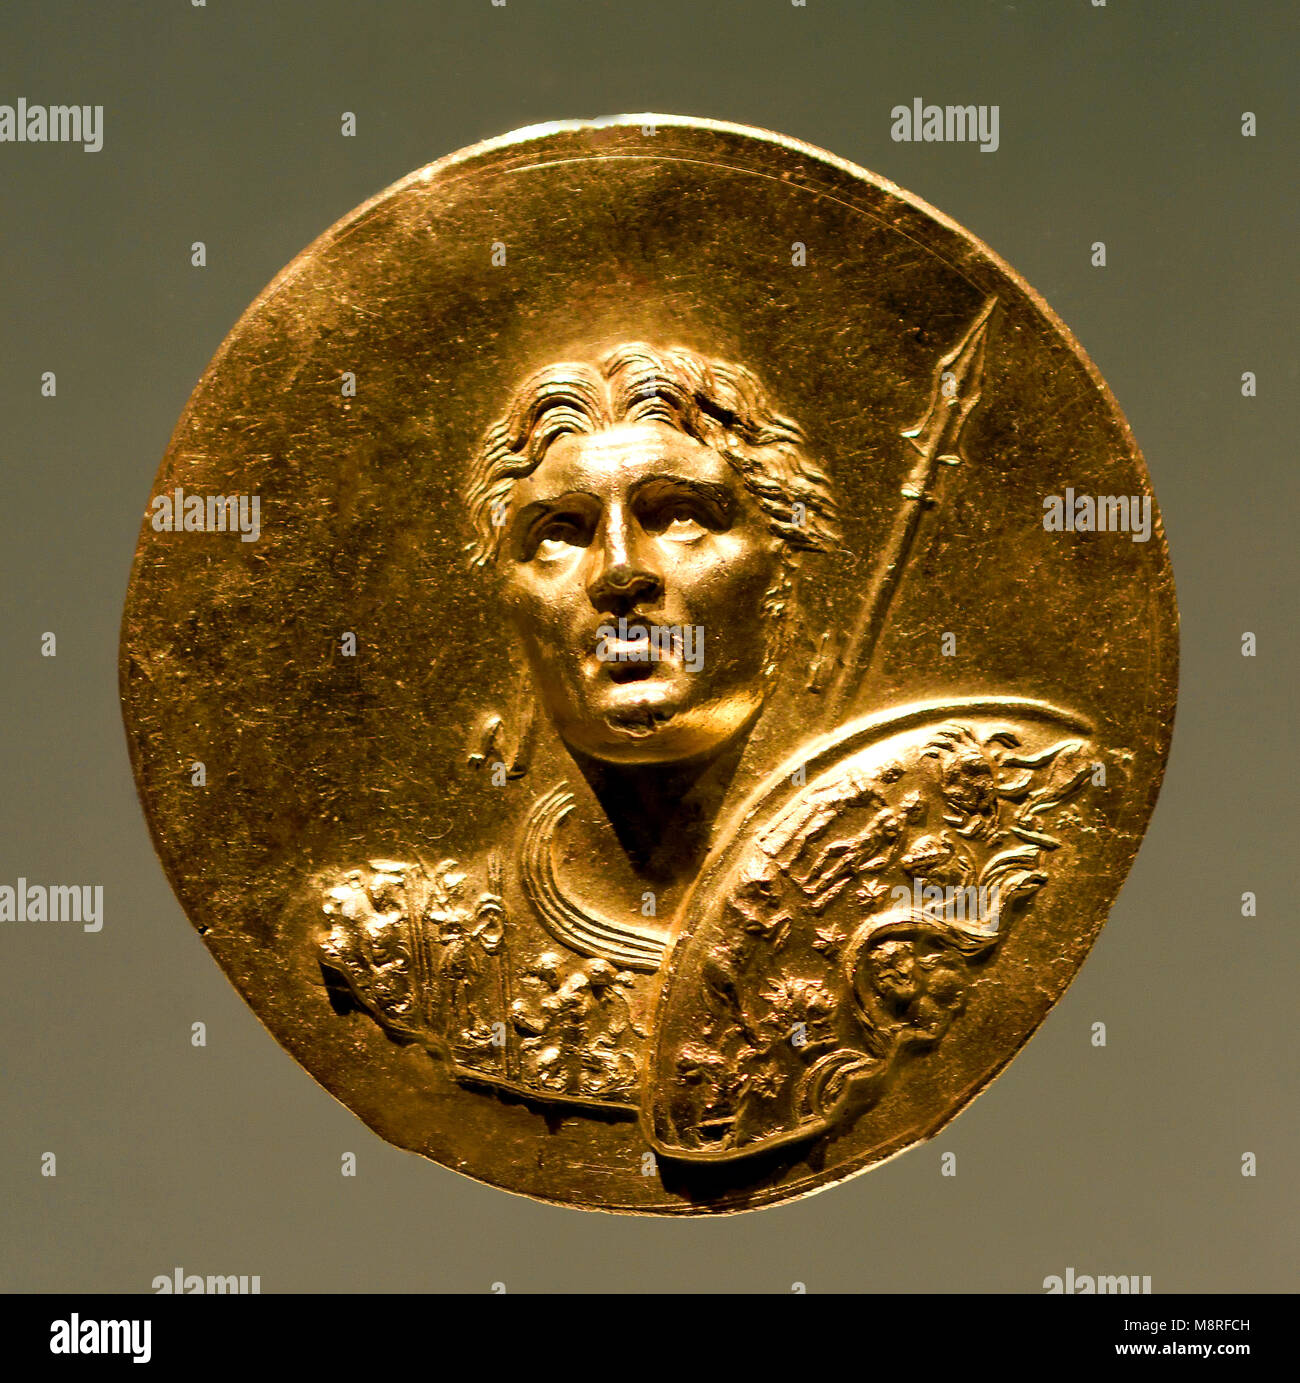 Alexander der Große war eine antike König von Makedonien (356-323 v. Chr.). Griechisch, Griechenland (Cuirassed Büste von Alexander bekleidet mit rundem Schild) Stockfoto